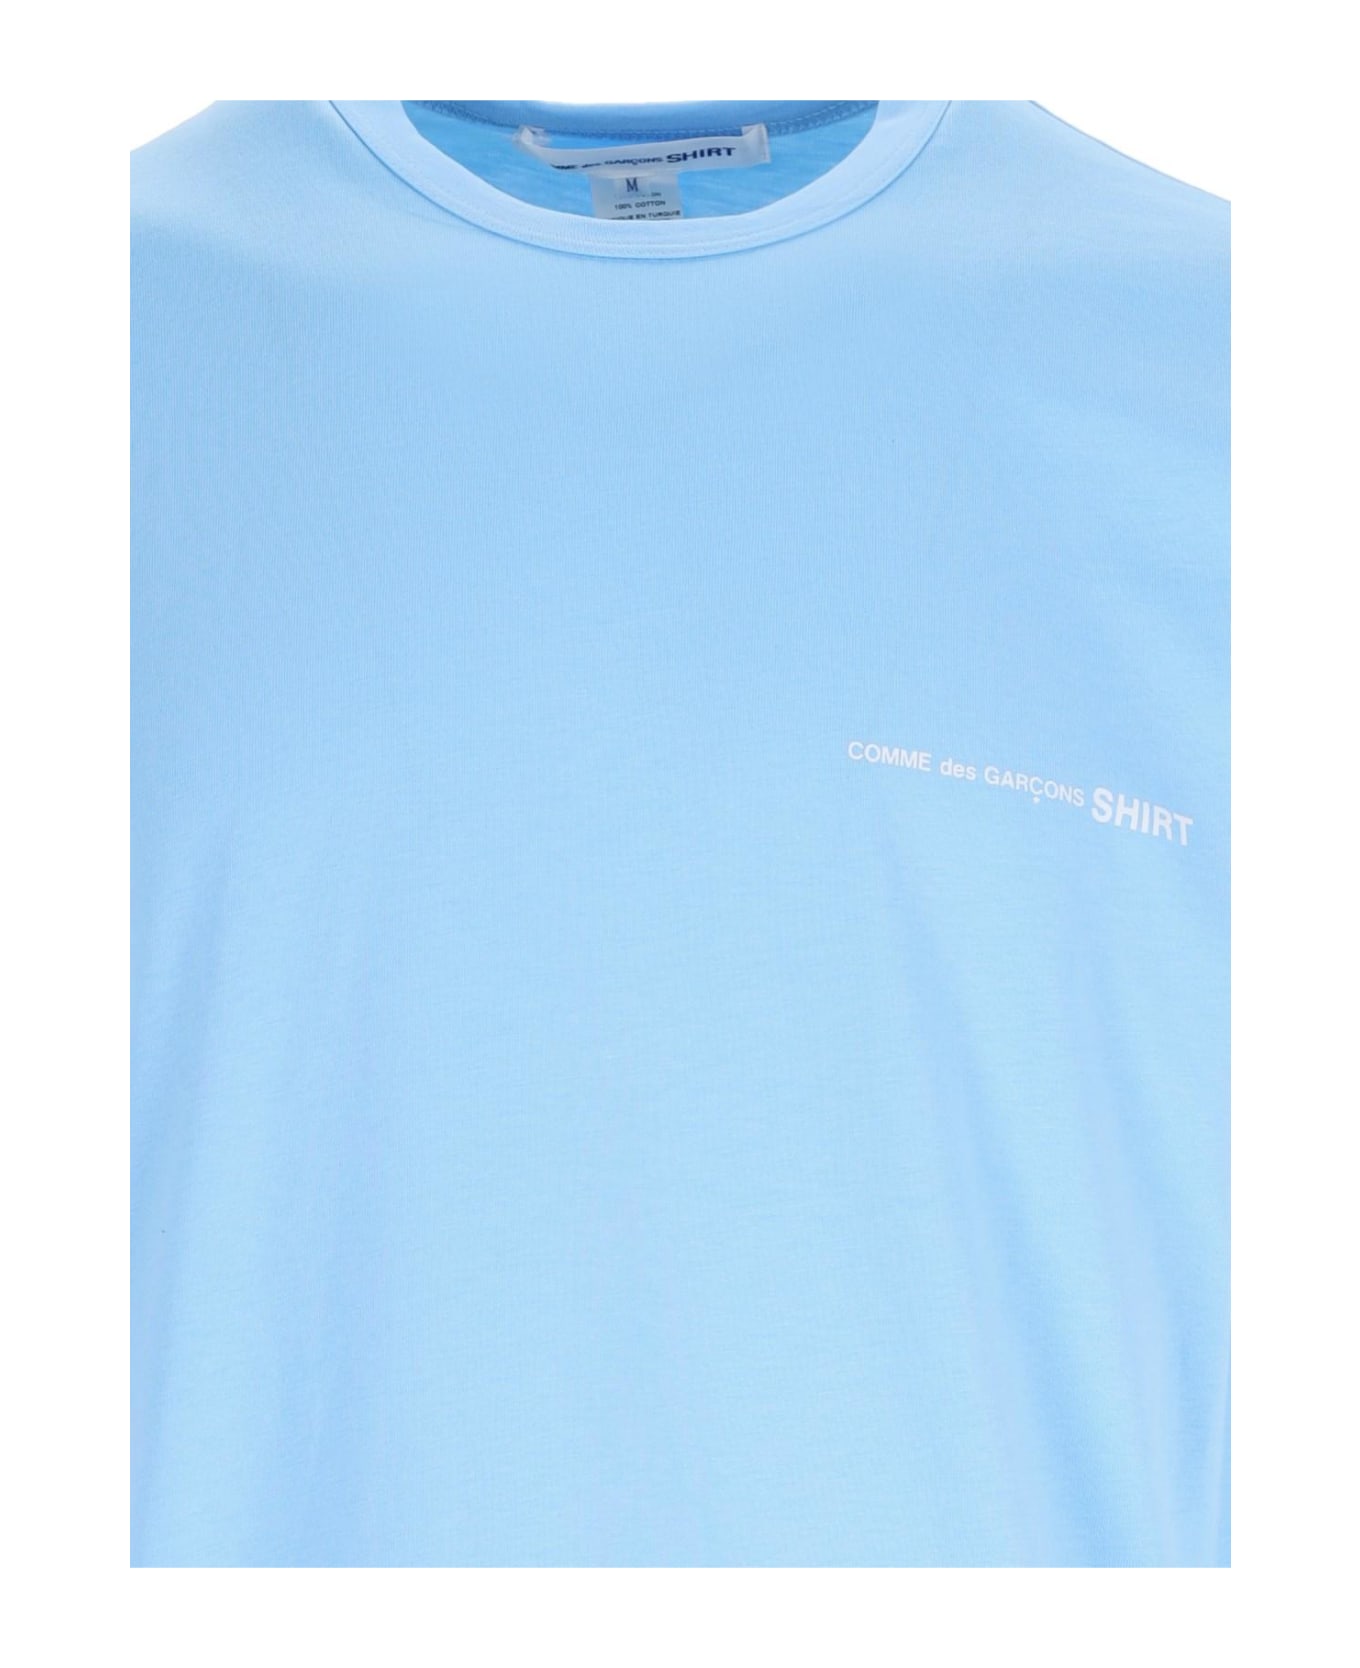 Comme des Garçons Shirt Logo T-shirt - Blue